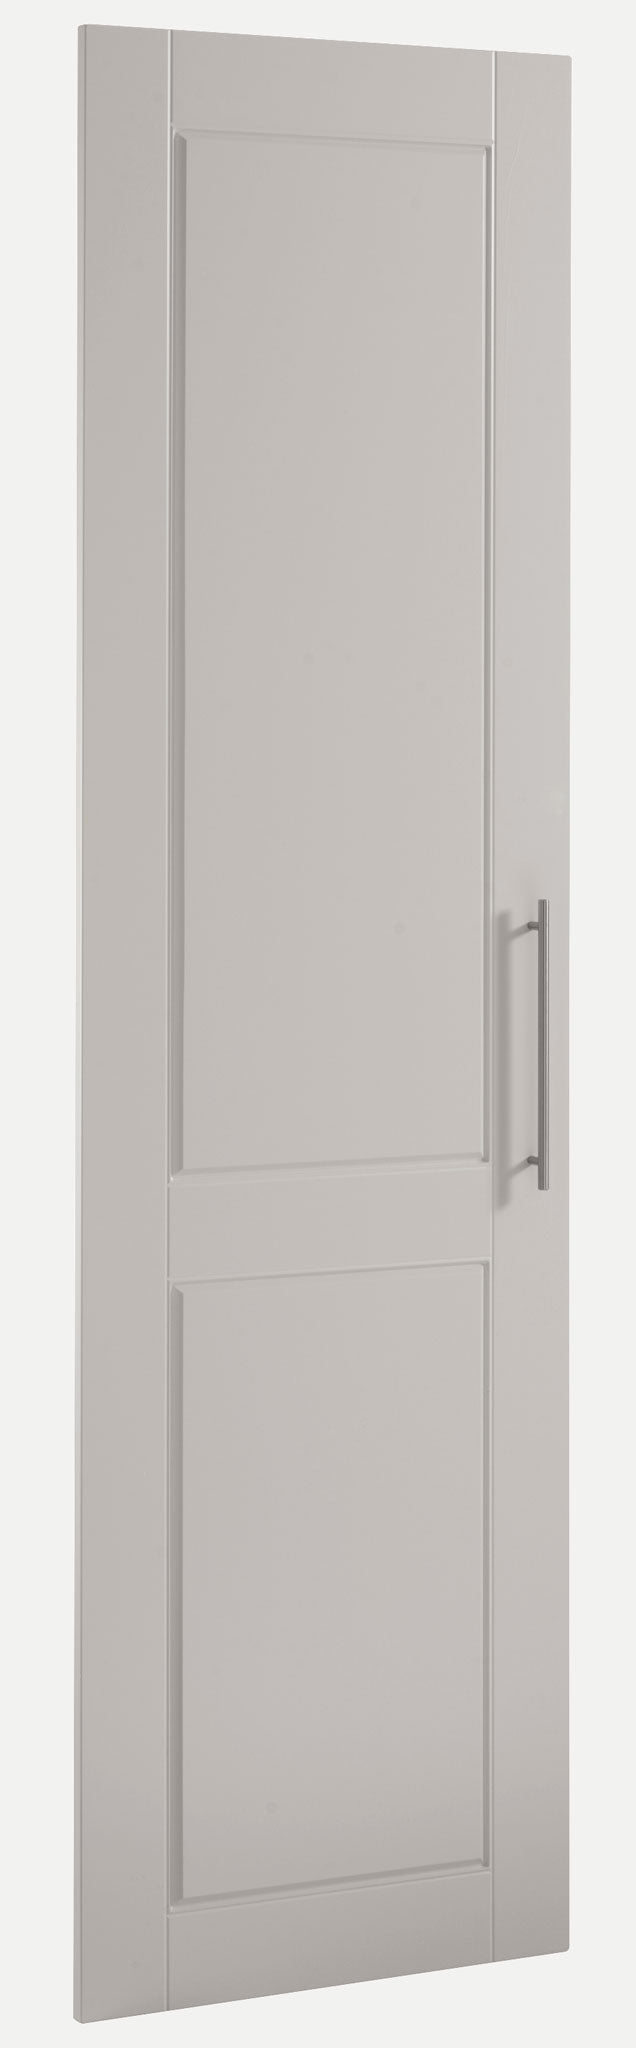 Custom made cupboard door in Henlow Style